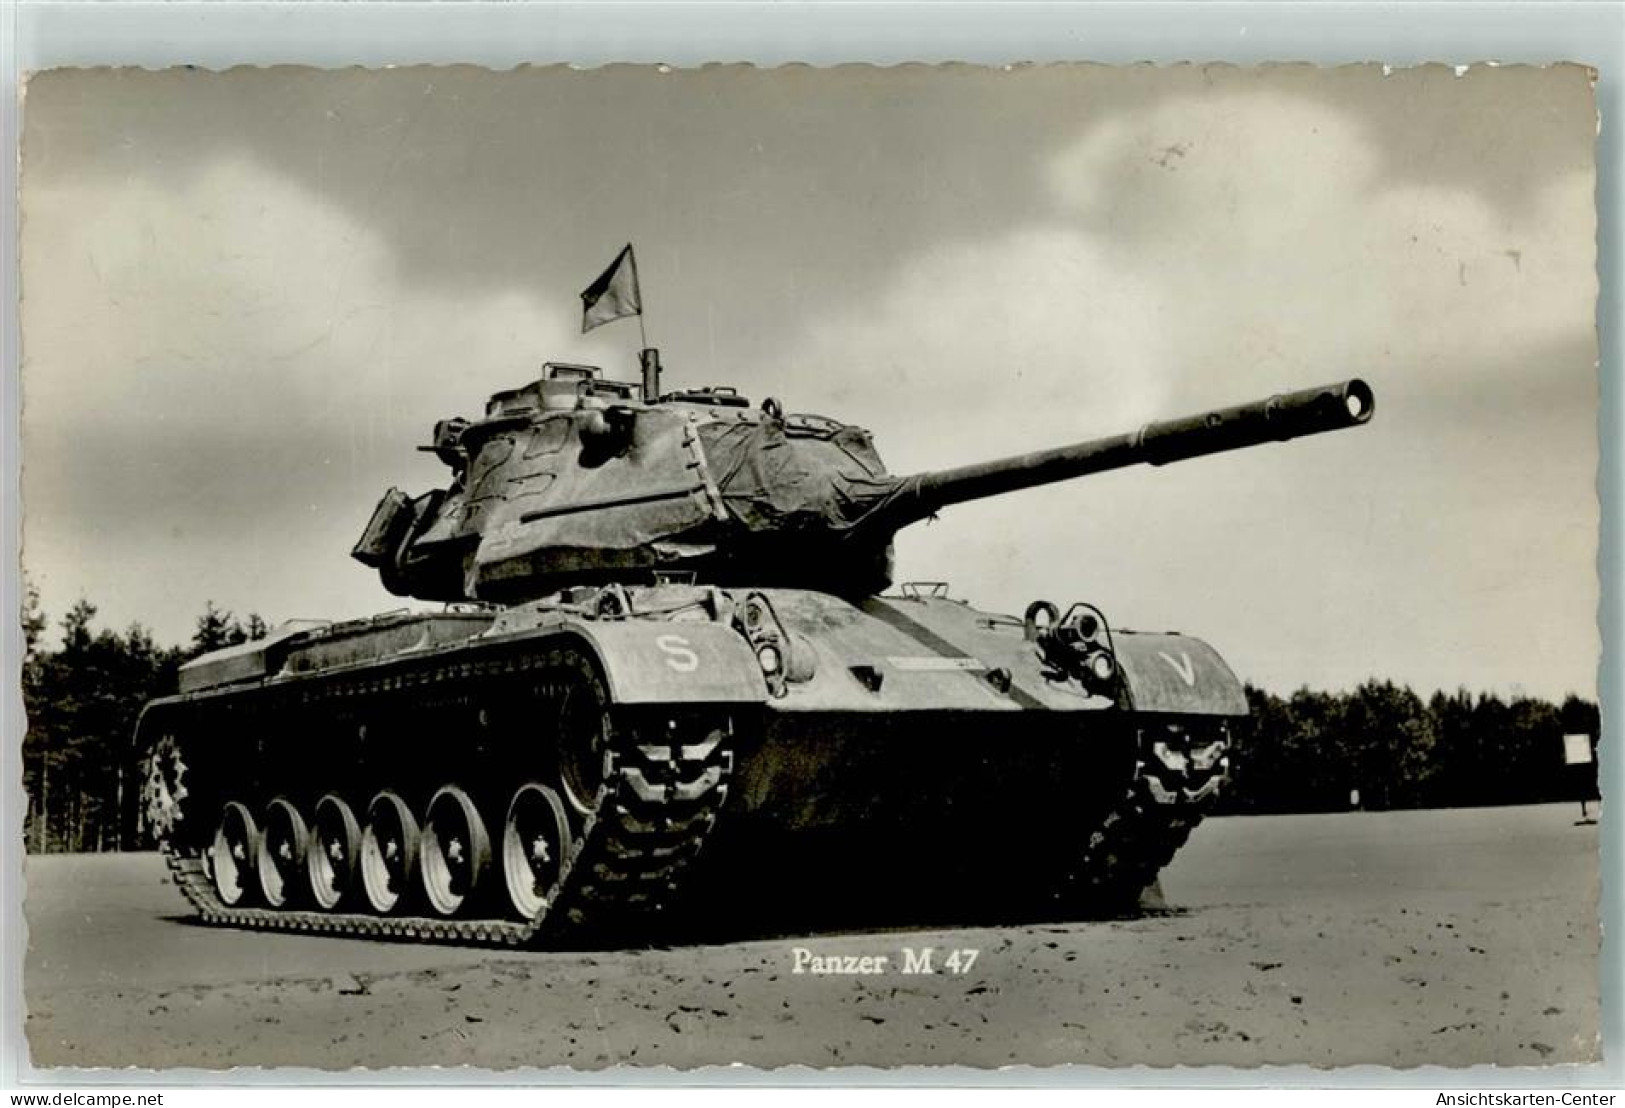 39271701 - Unsere Bundeswehr Panzer M 47 - Material